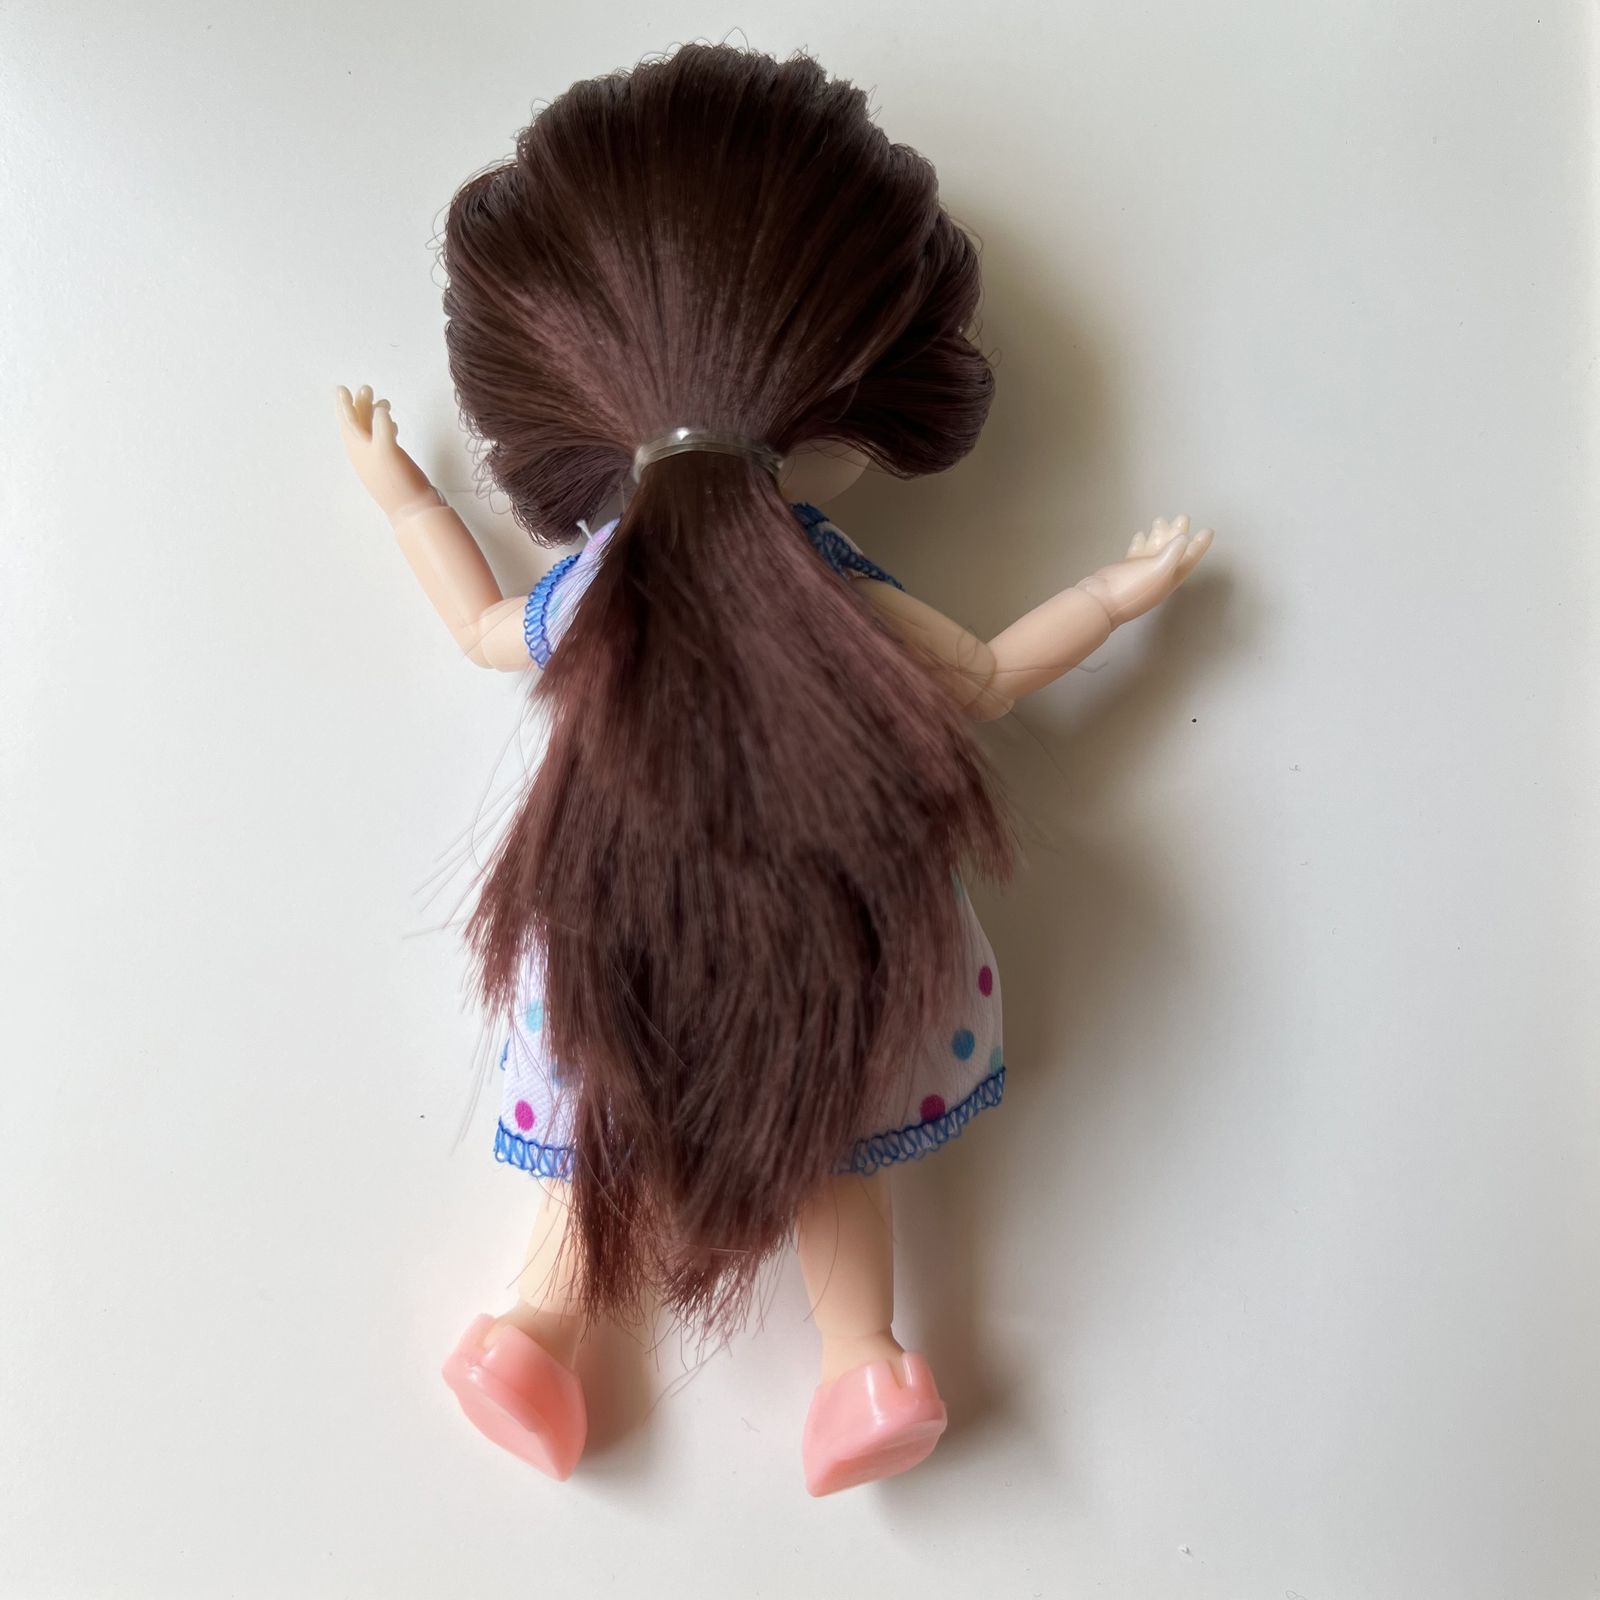  عروسک طرح دخترک چشم تیله ای تمام مفصلی مدل D6 ارتفاع 16 سانتیمتر -  - 4